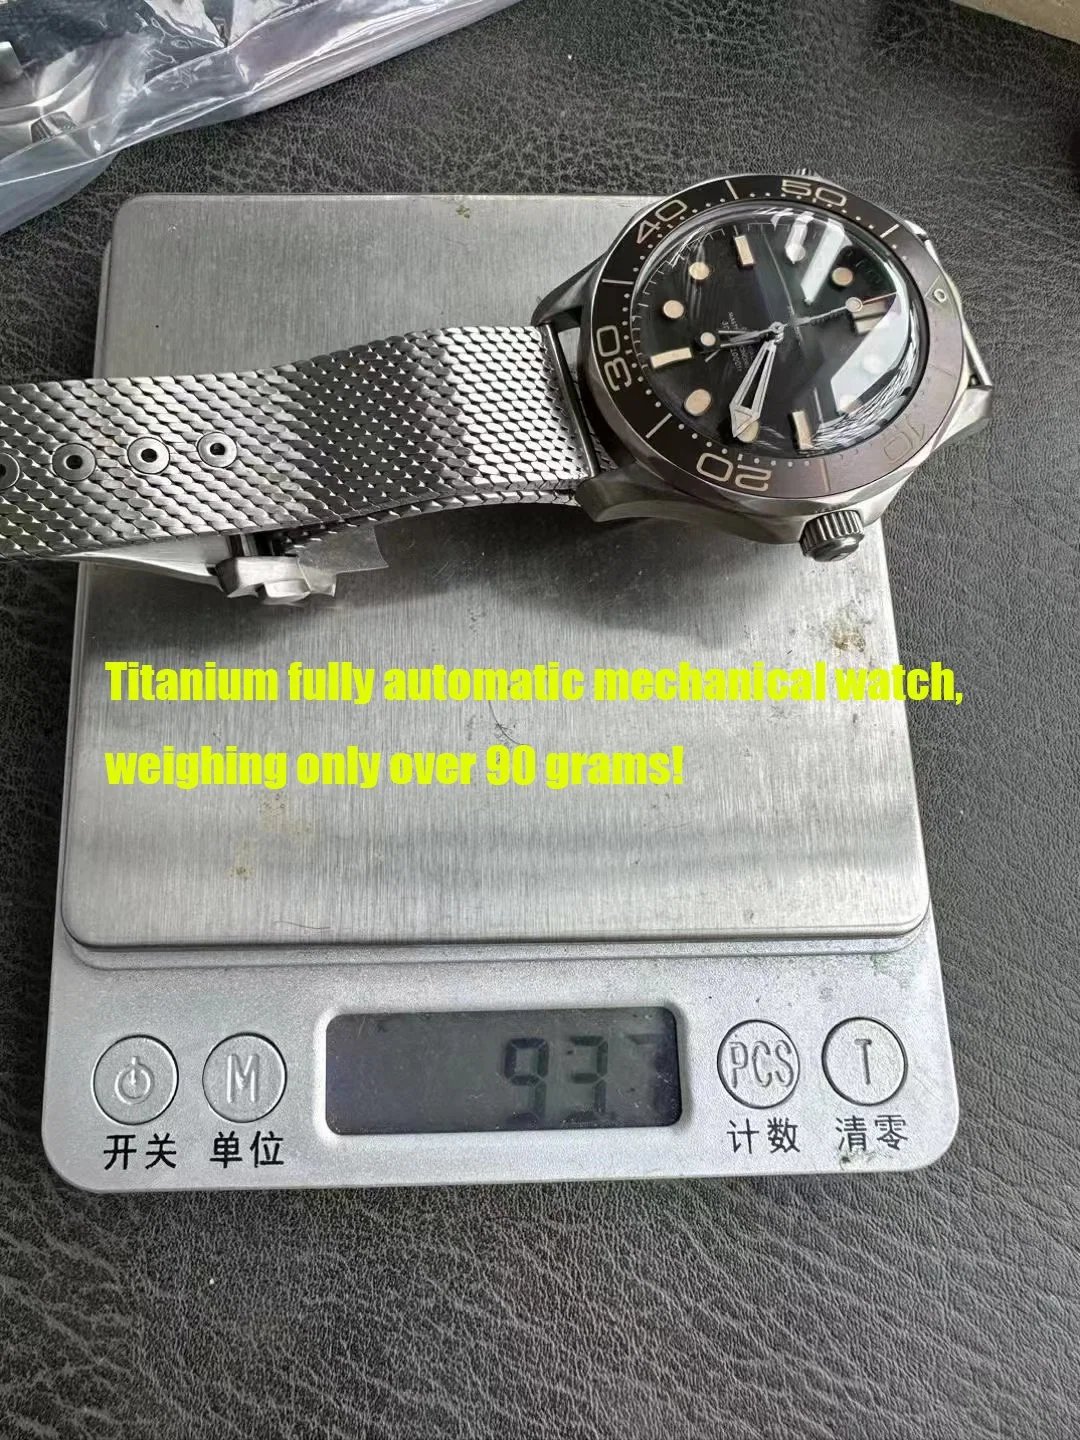 Super Clone vs Factory 8806 Movimiento 5A Titanium Watch Luxury Ver gratis Correa de nylon y Bolsa de tela Envasado Acero inoxidable 42mm Reloj mecánico para hombre